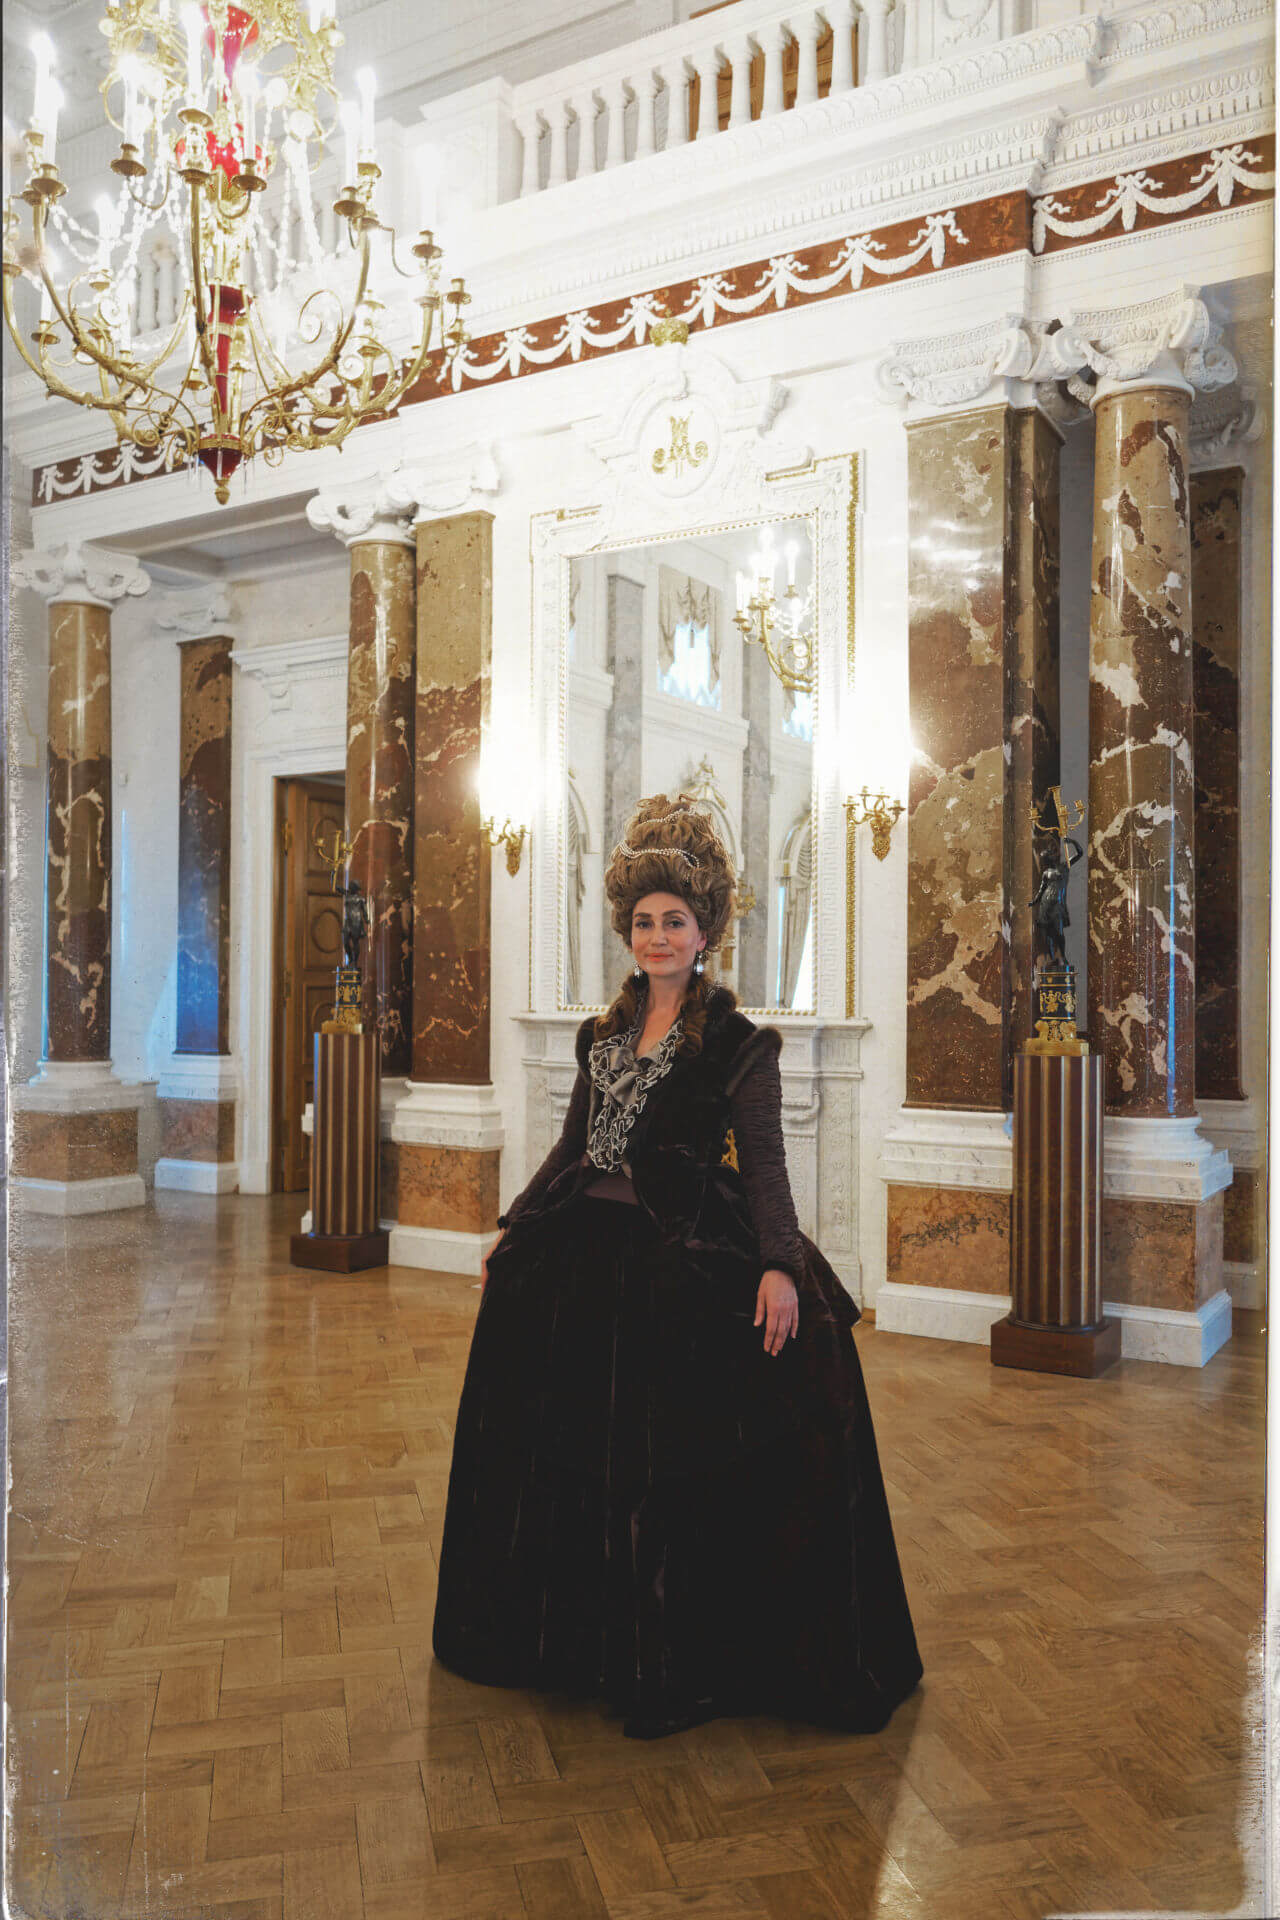 Дама в роскошном платье 18 века в бальном зале дворца в Твери 